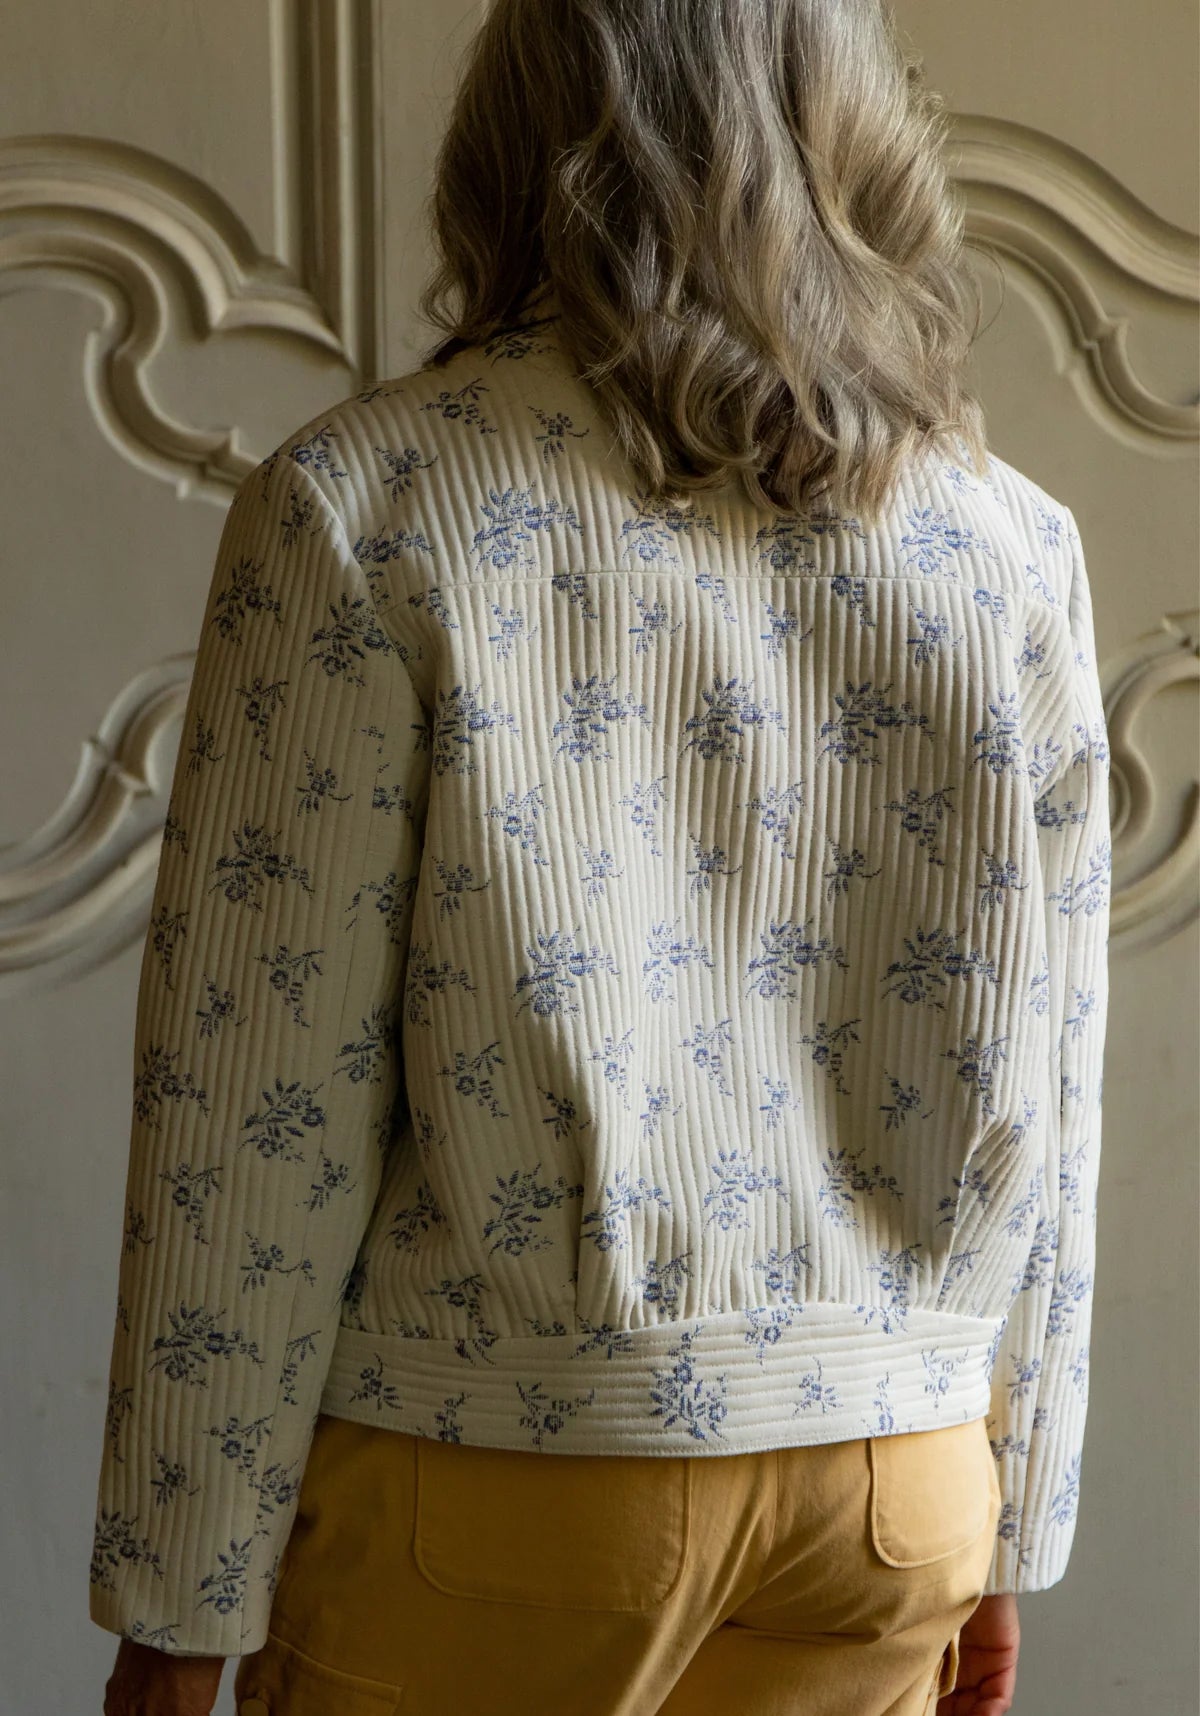 Maison Fauve - Dandelion Jacket Sewing Pattern